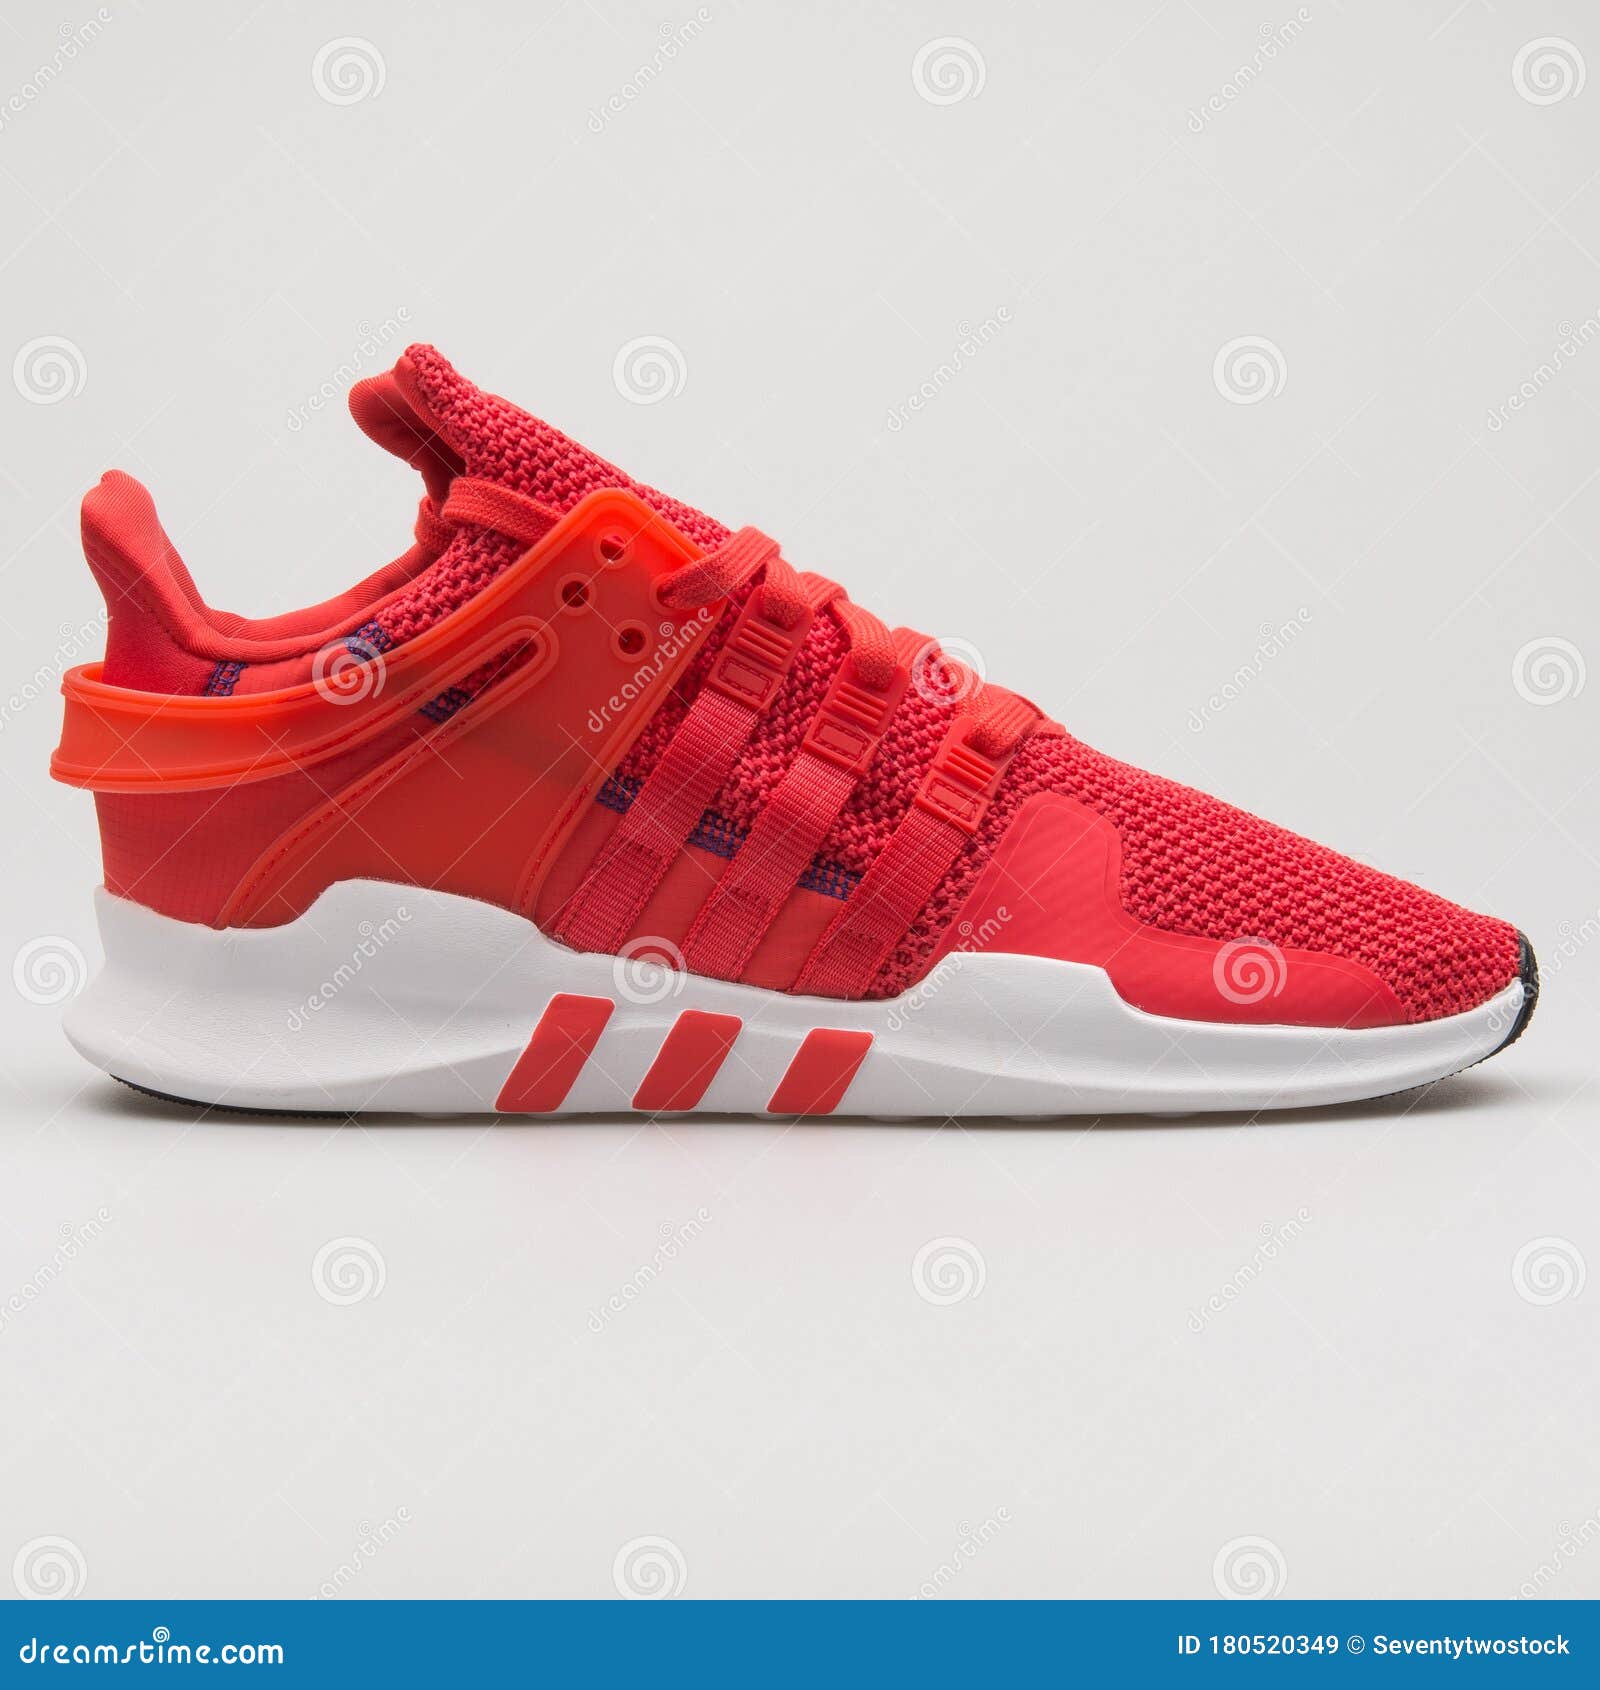 Adidas Eqt Support Adv Red Y White Sneaker Imagen de archivo - Imagen de zapatillas, elemento: 180520349